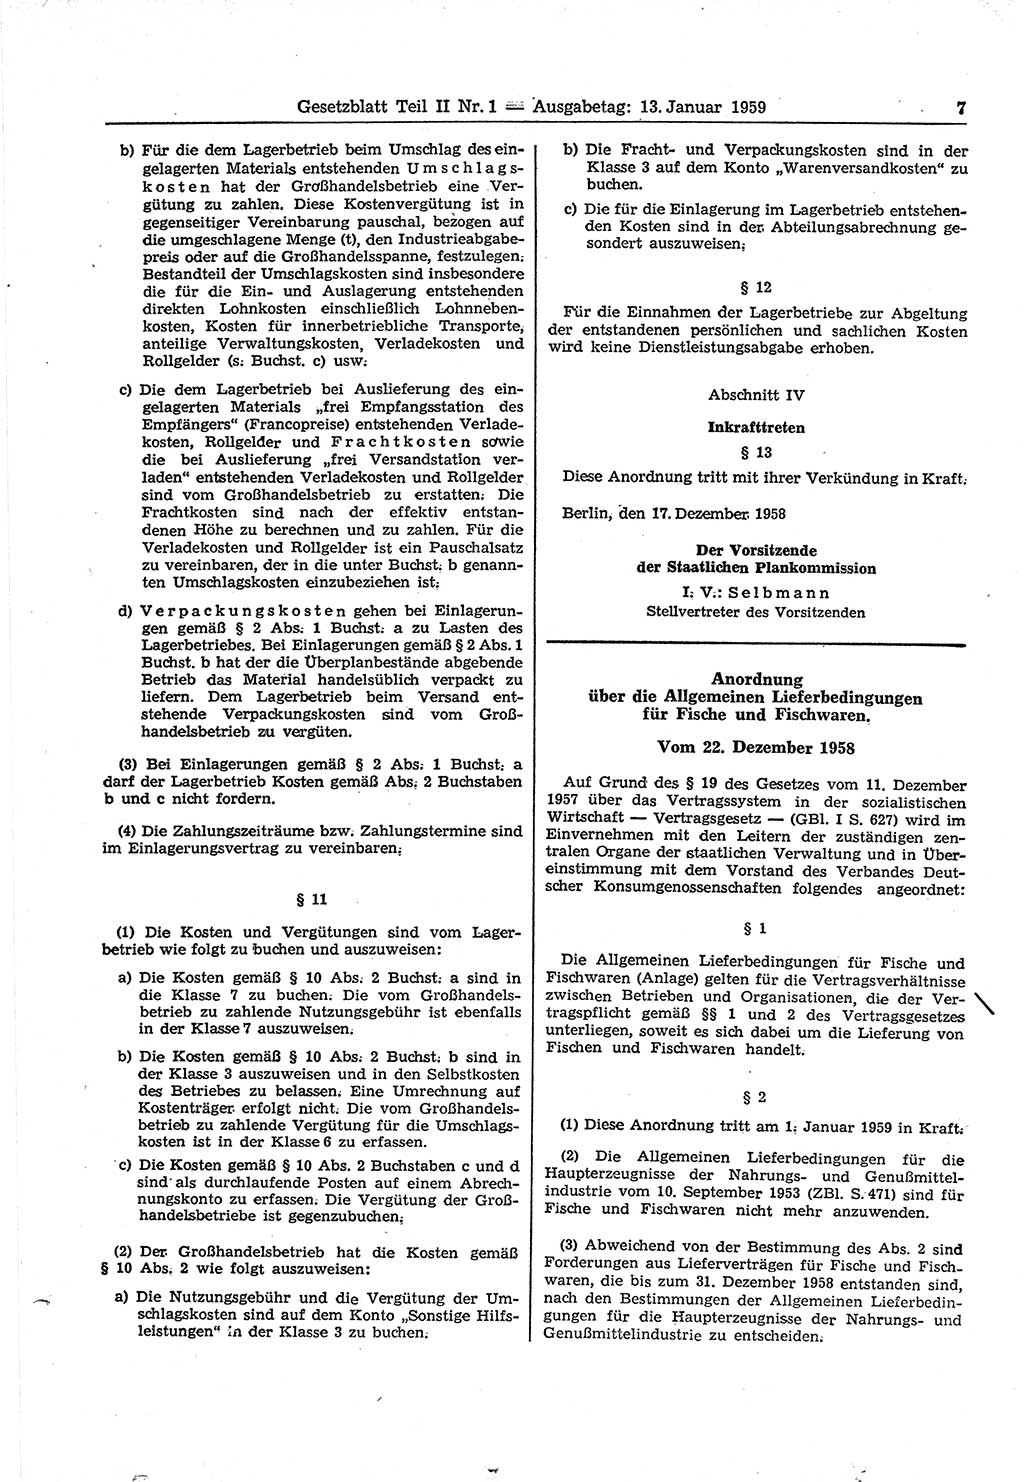 Gesetzblatt (GBl.) der Deutschen Demokratischen Republik (DDR) Teil ⅠⅠ 1959, Seite 7 (GBl. DDR ⅠⅠ 1959, S. 7)